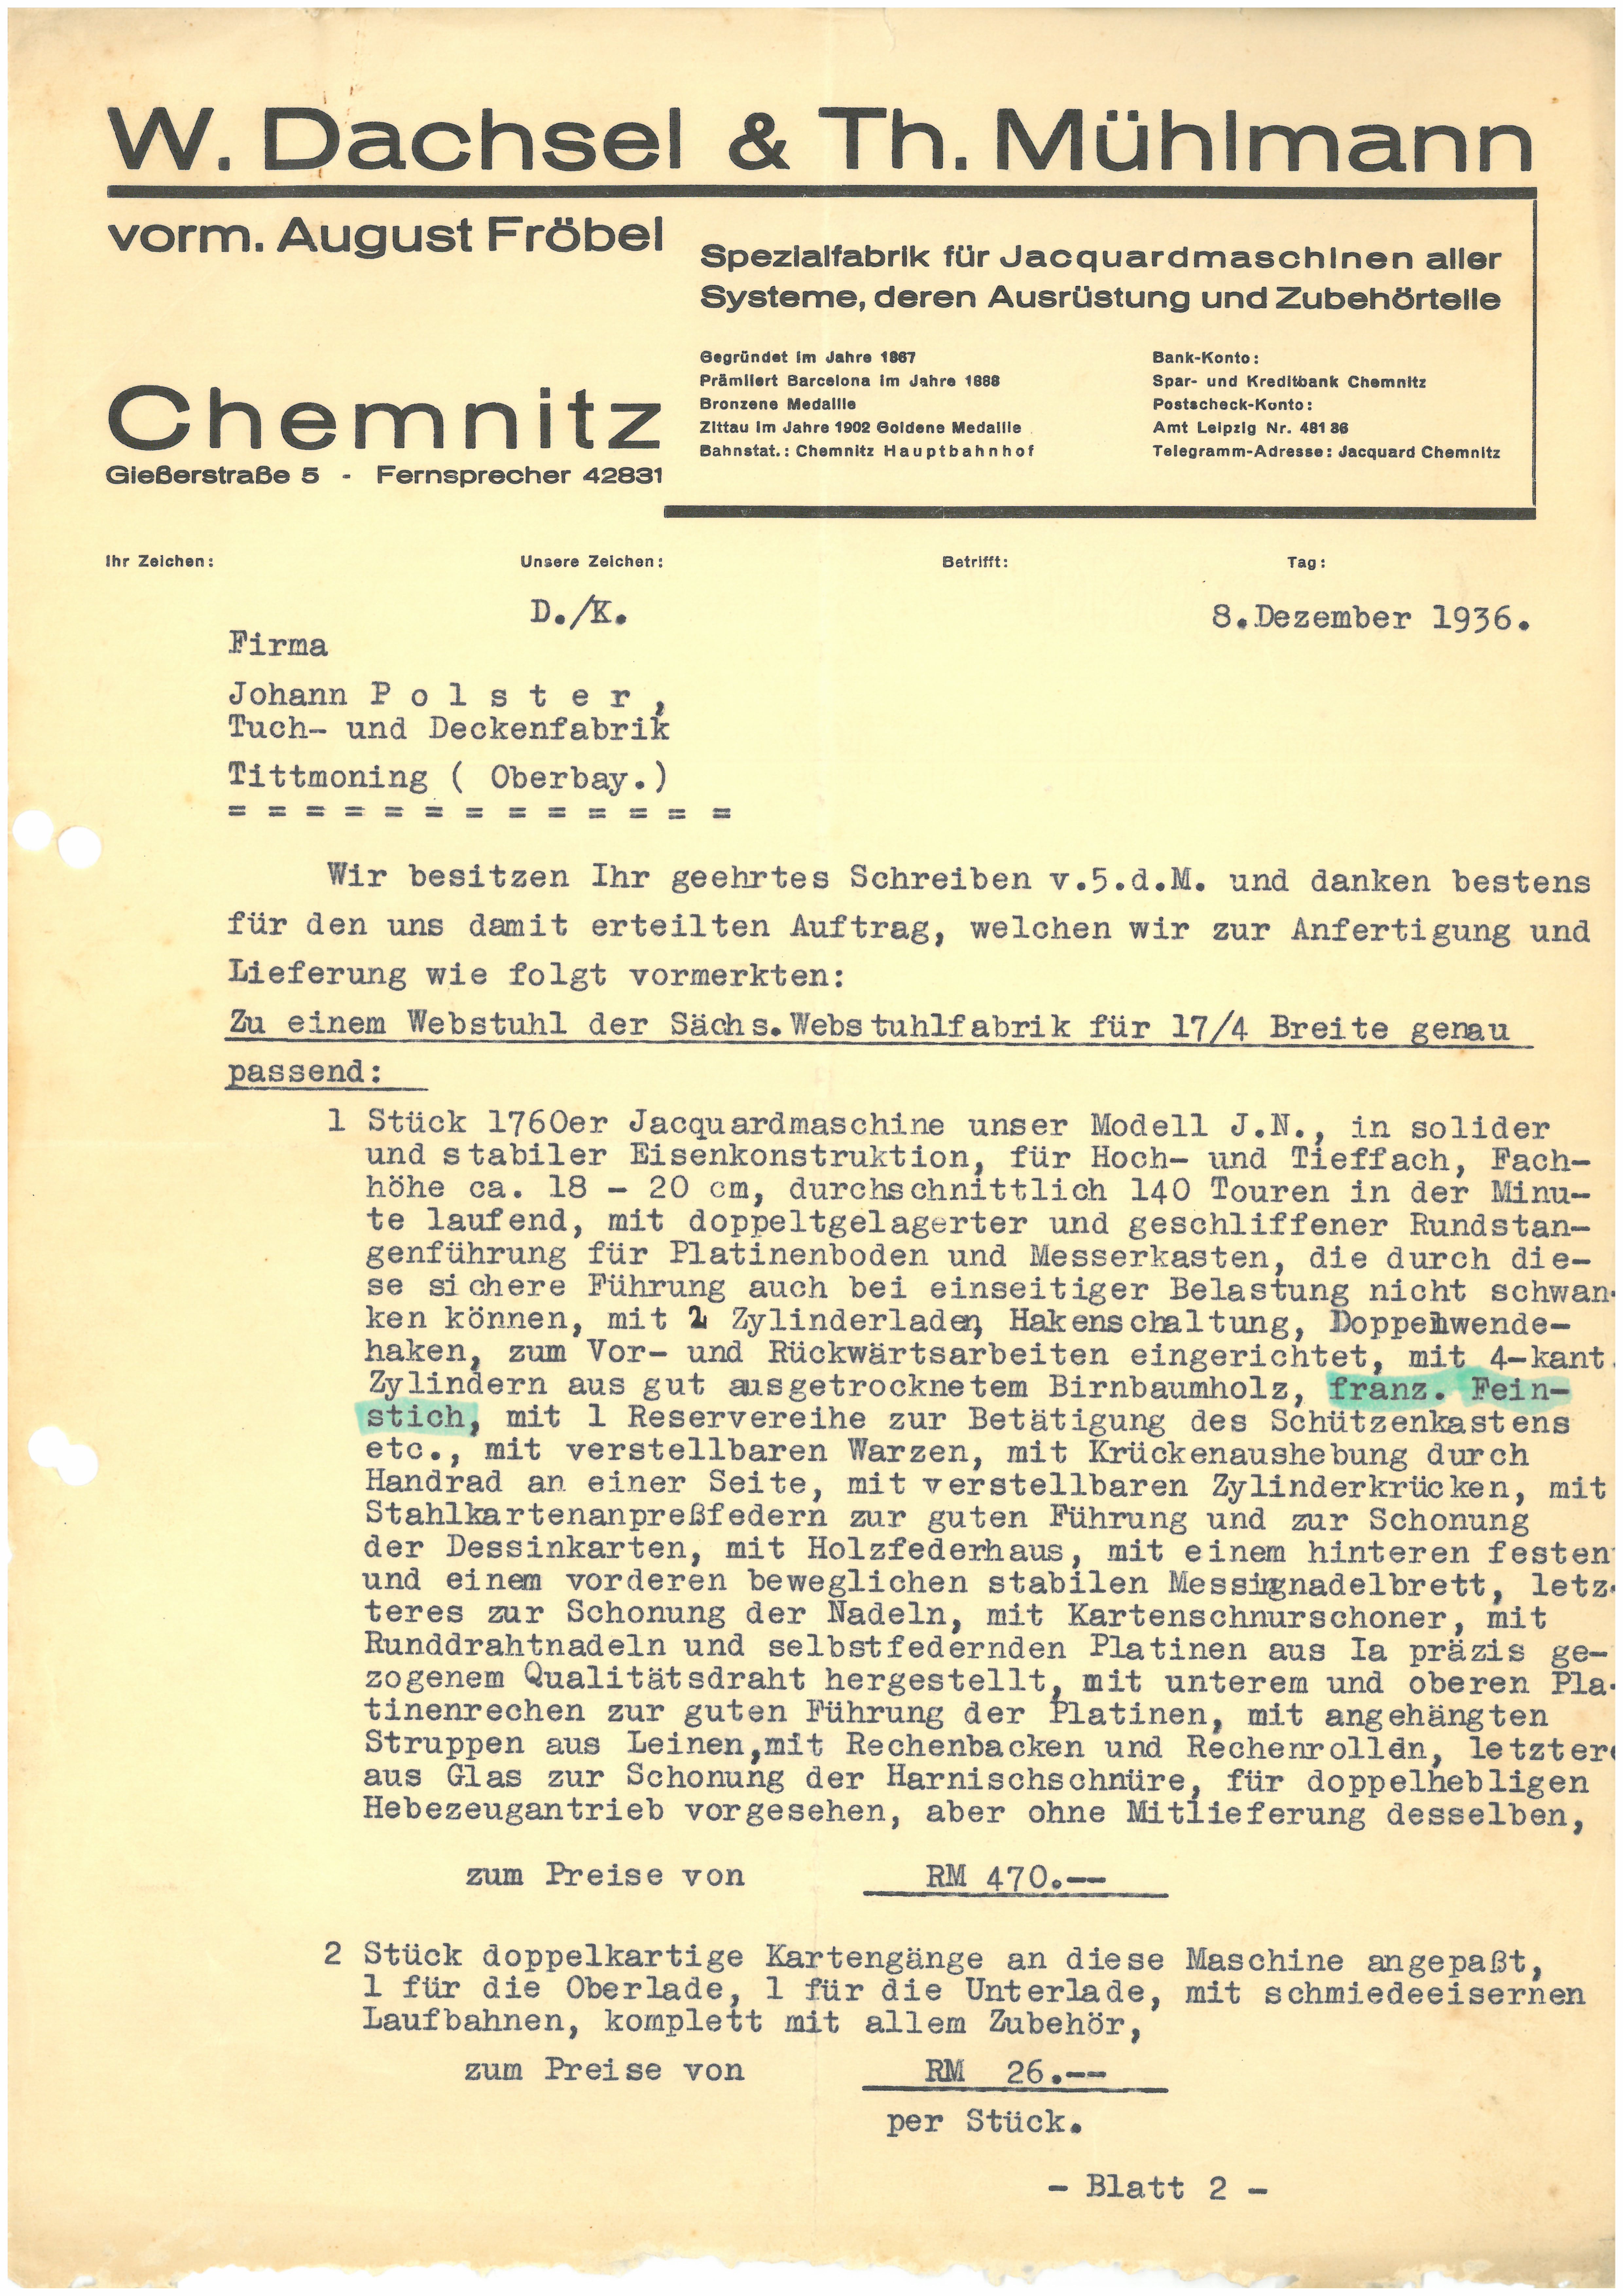 Auftragsbestätigung und Angebot der Fa. OHG W. Dachsel & Th. Mühlmann vom 8. Dezember 1936 (Tuchmacher Museum Bramsche CC BY-NC-SA)